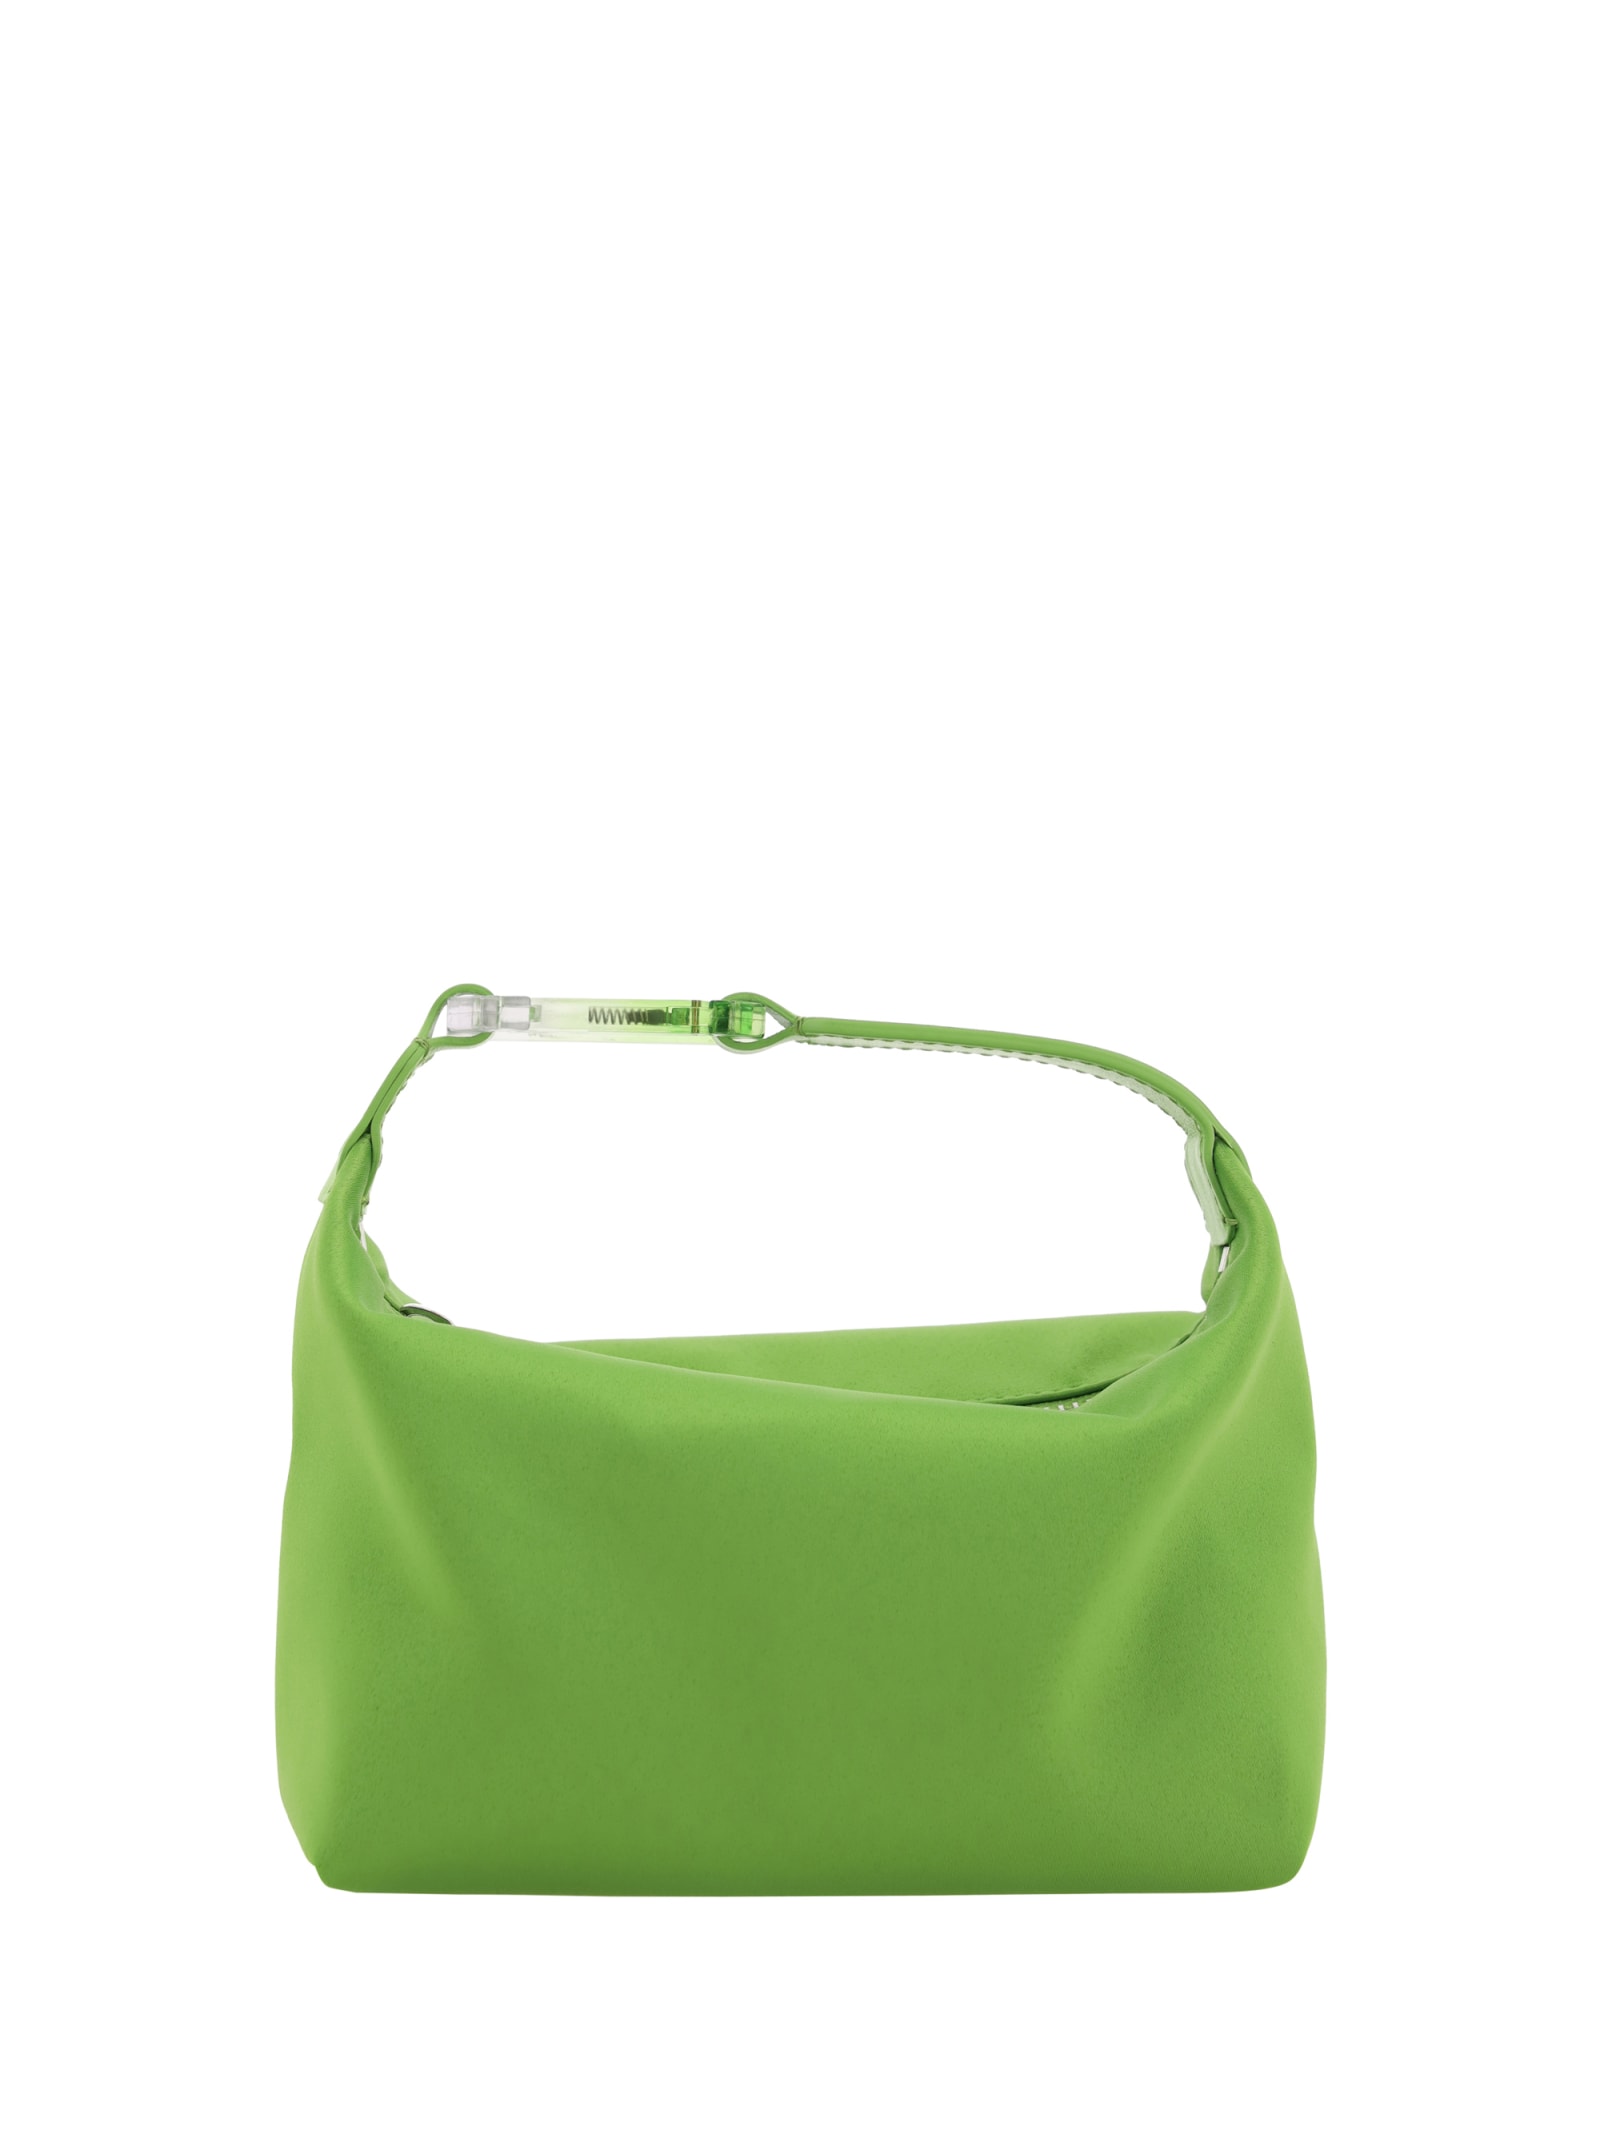 Eéra Moon Handbag In Green